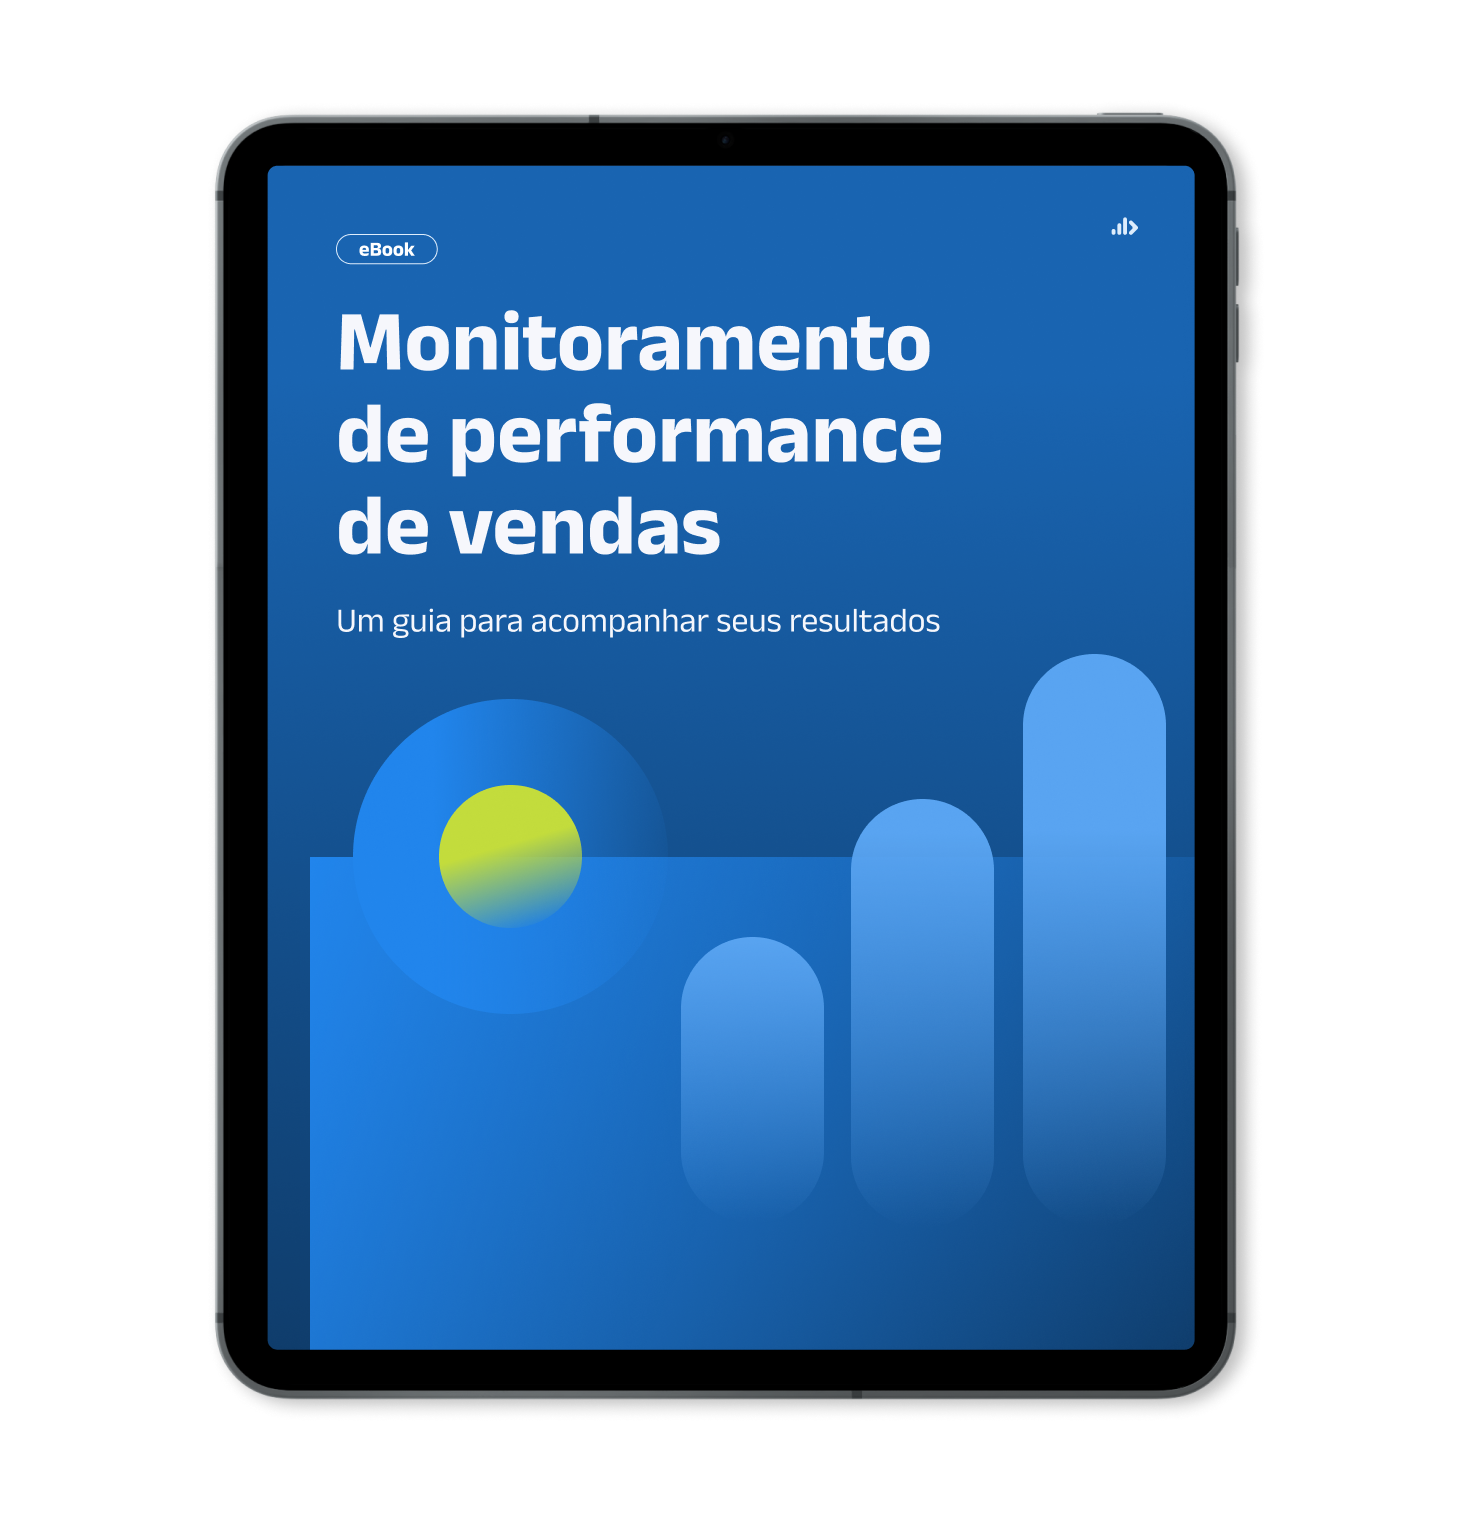 Mockup de Tablet com capa do Ebook - Monitoramento de performance de vendas - Um guia para acompanhar seus resultados